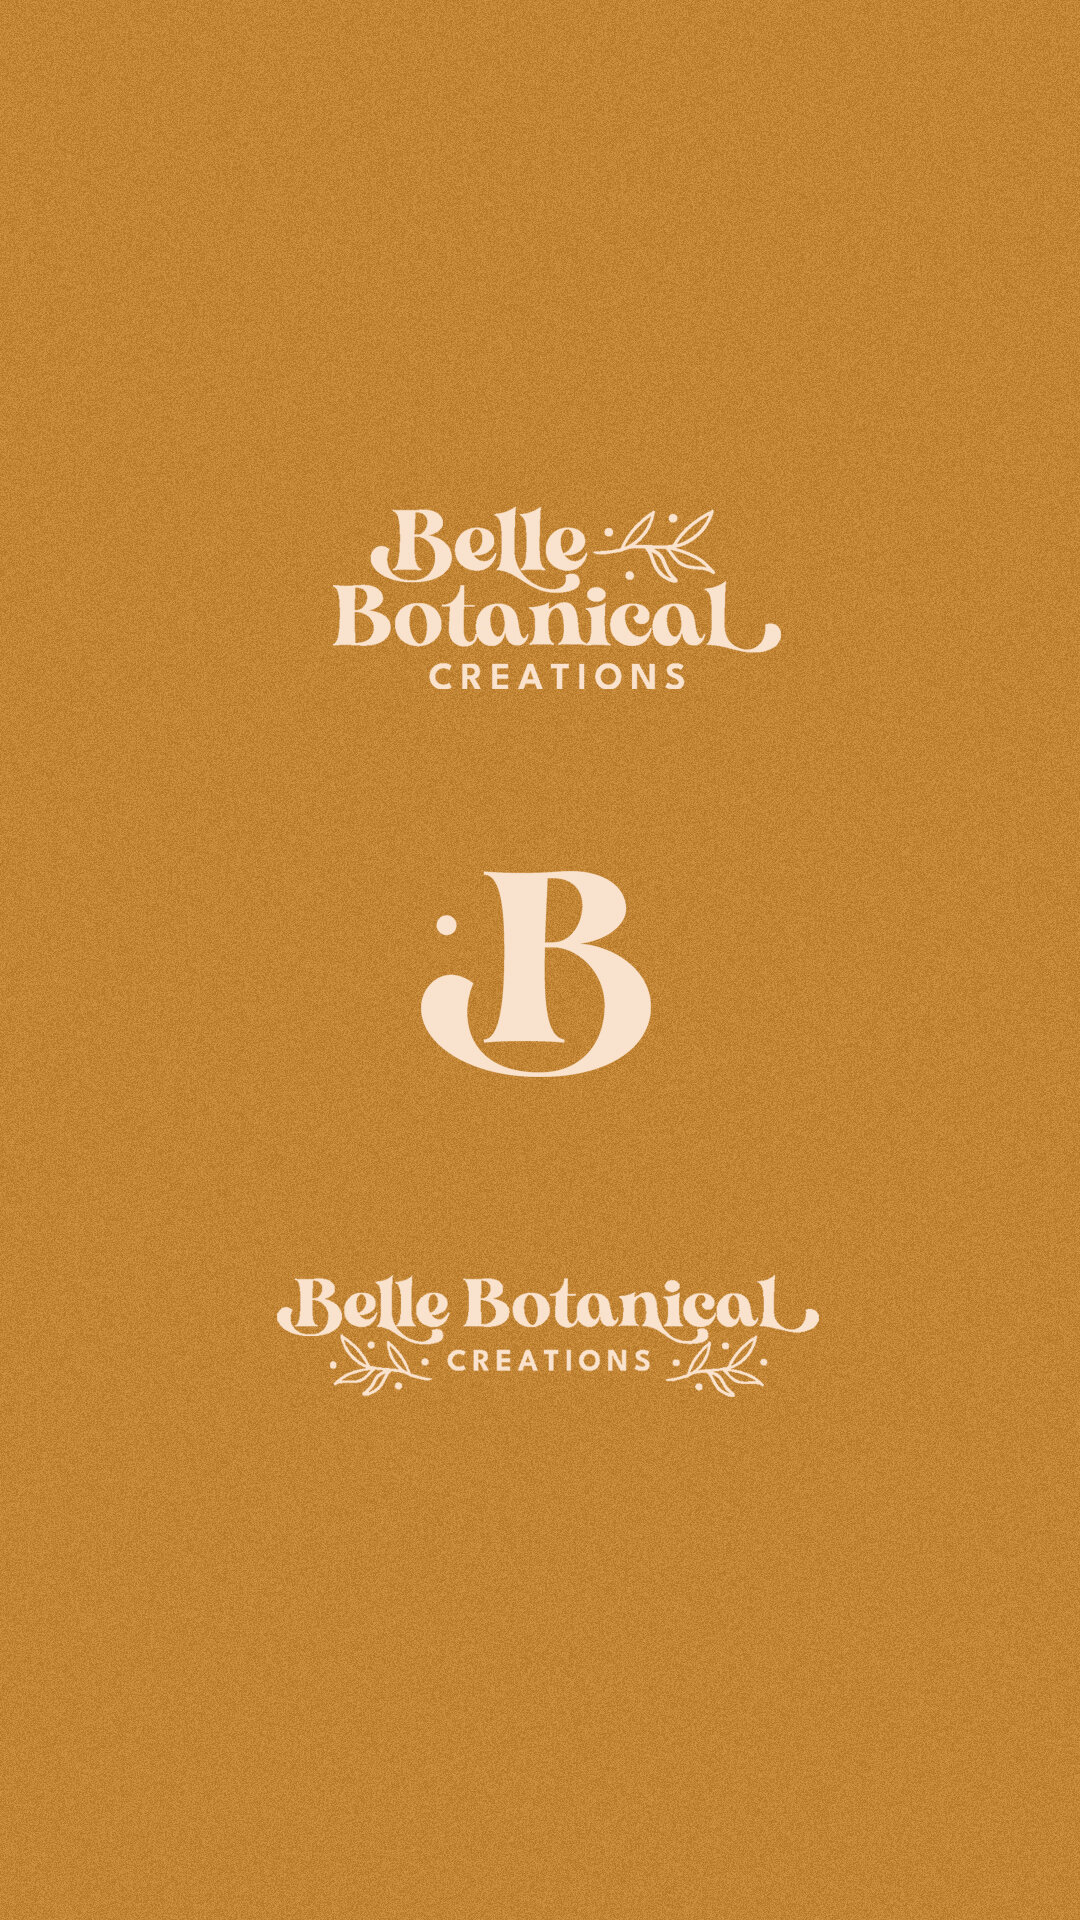 Kenzi-Green-Belle-Botanical-logos-3